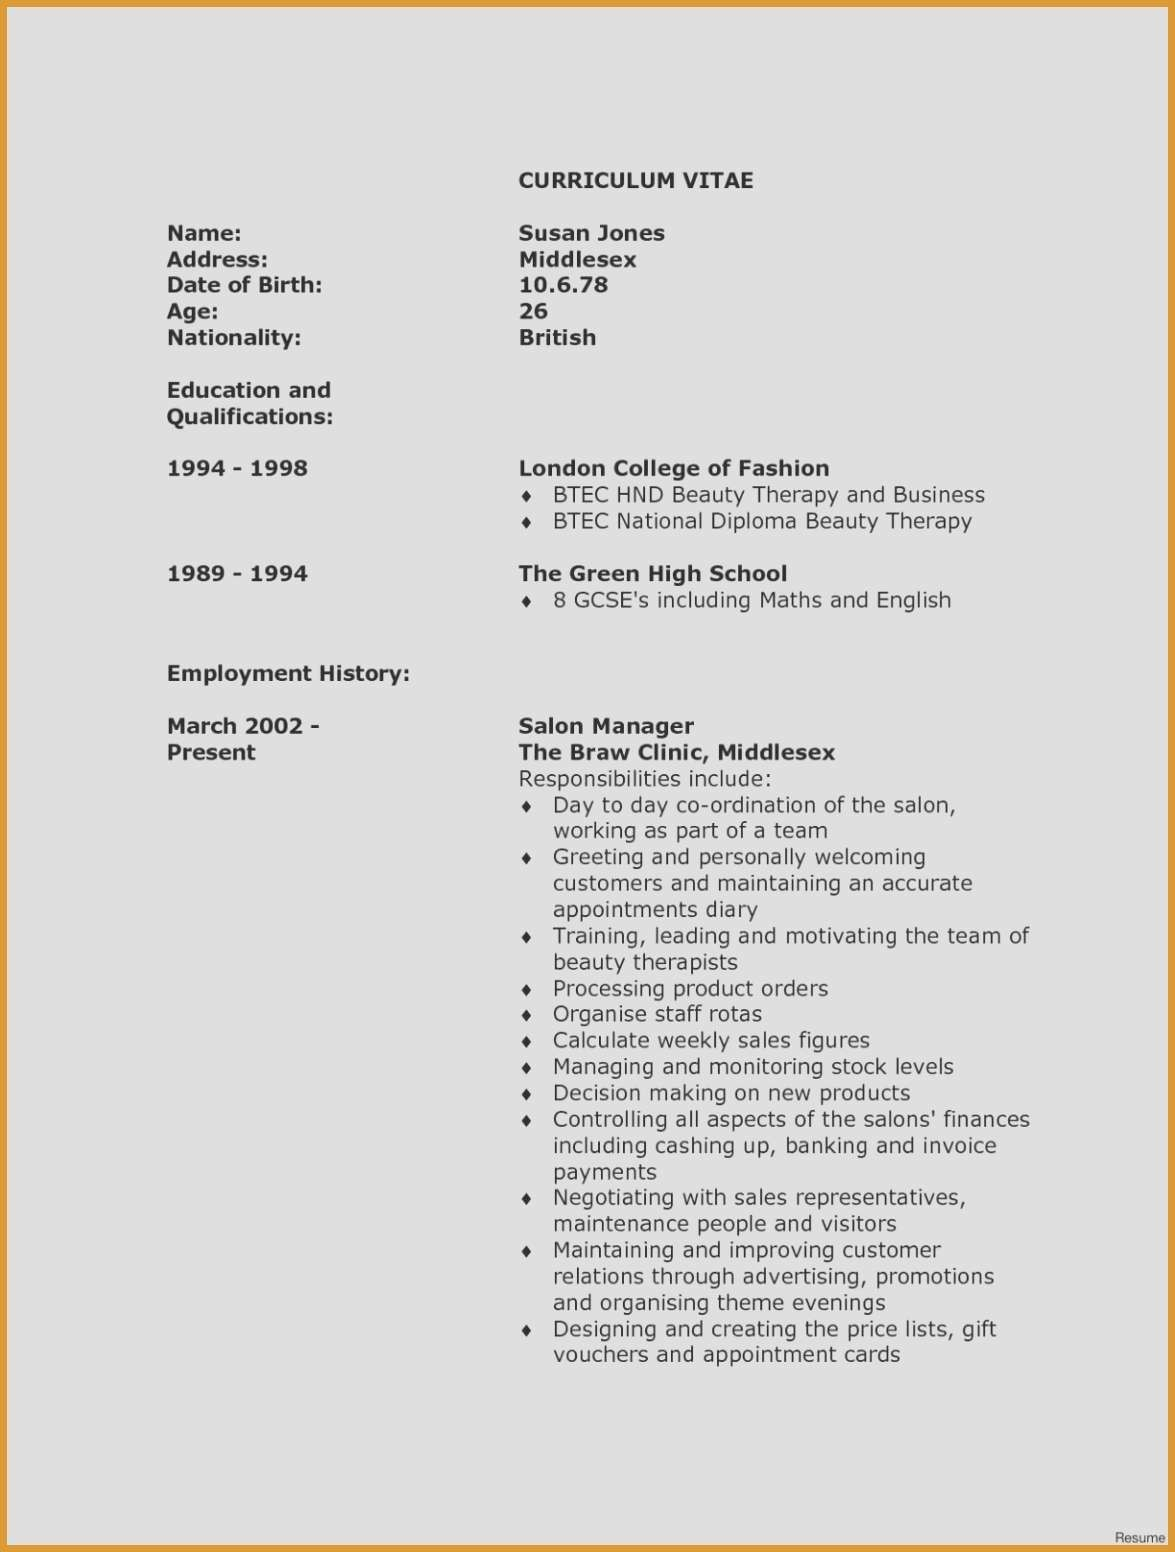 Cover Letter for Teaching Job Template - Resume for Teaching Position Luxury Resume for Teacher Elegant